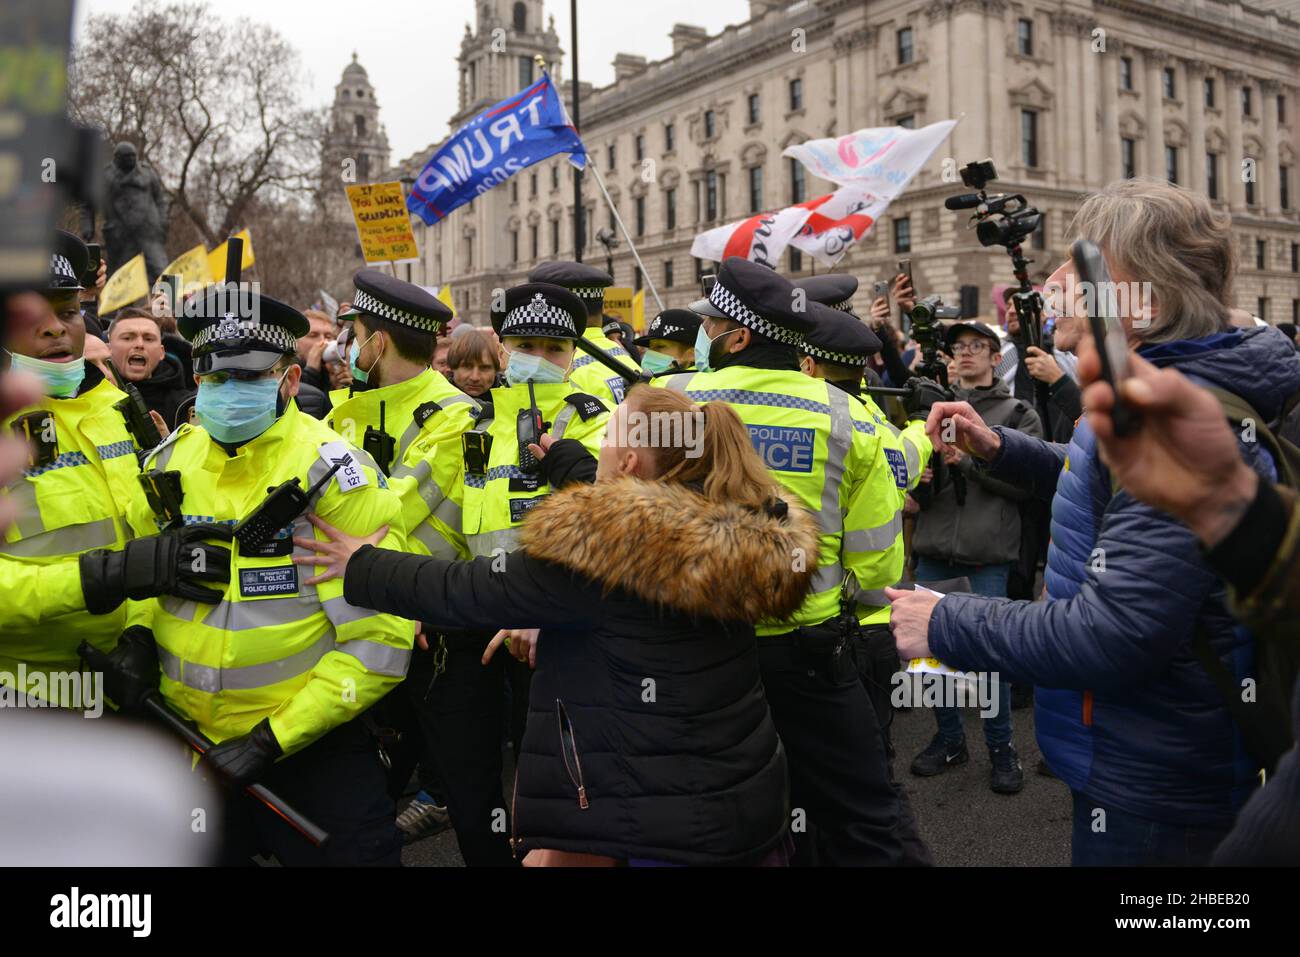 La police s'est rabatée avec des manifestants qui tentent d'empêcher un blocus de la rue, pendant la manifestation.Les manifestants anti-vaccin et anti-vaccin ont rejoint les opposants aux restrictions de Covid 19, se sont rassemblés sur la place du Parlement et ont défilé dans le centre de Londres. Banque D'Images